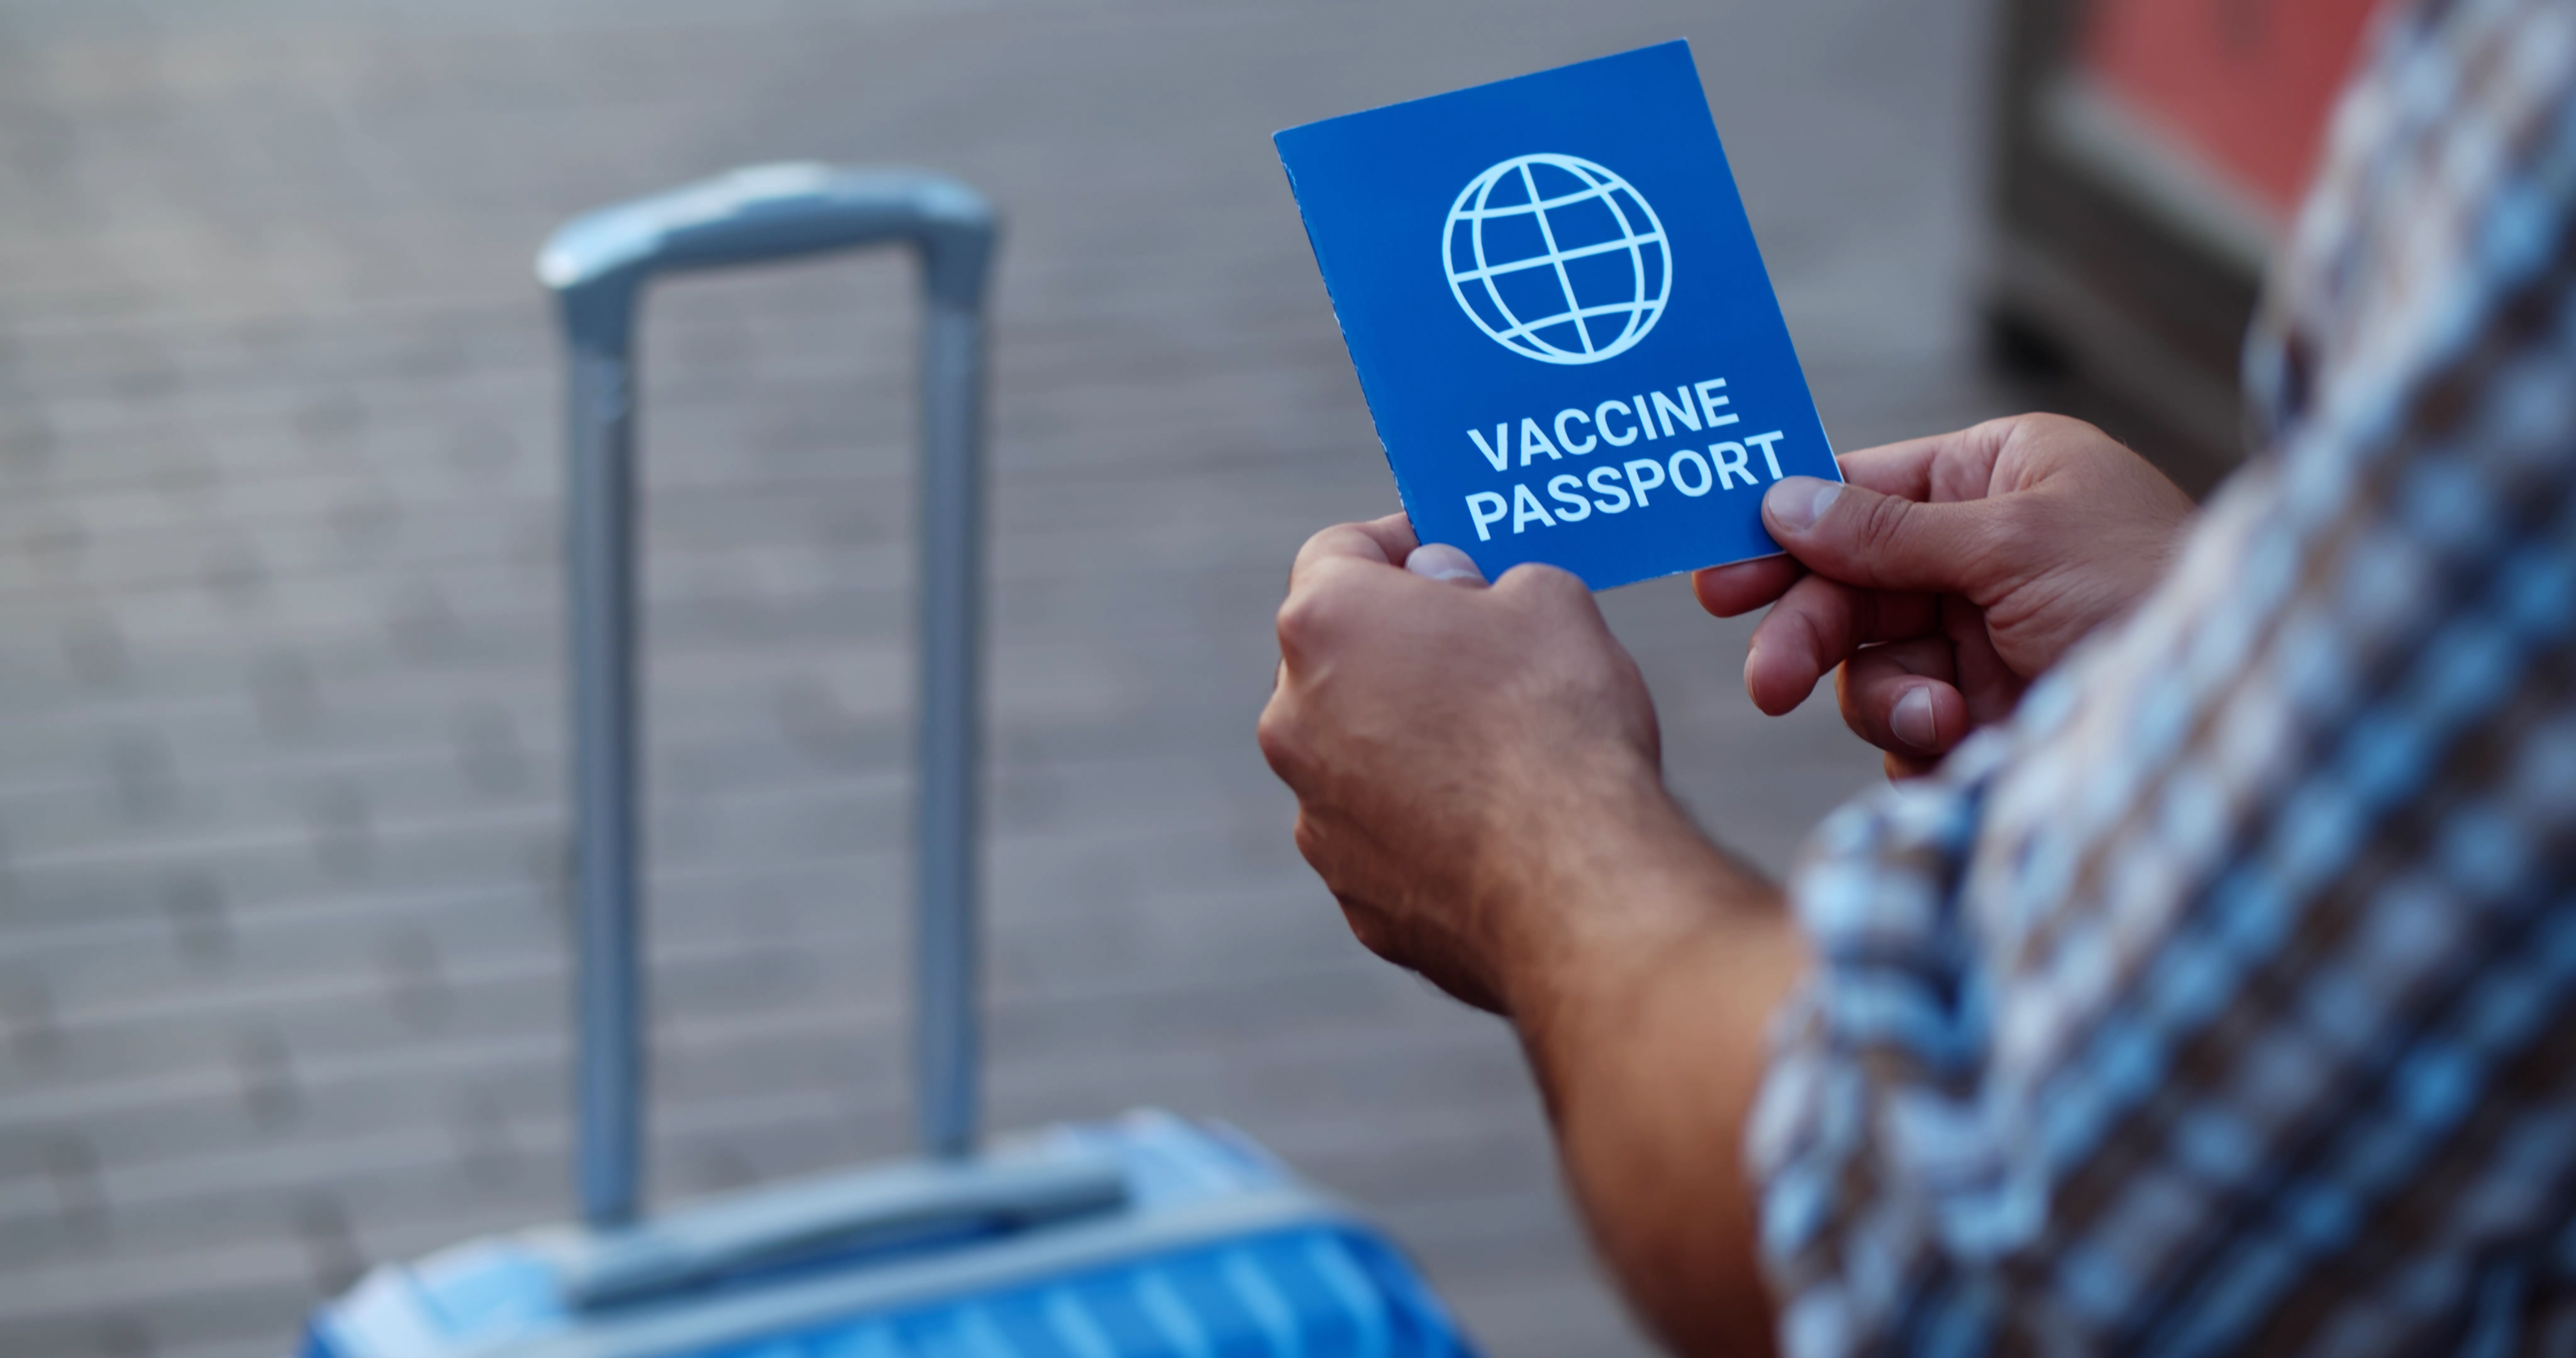 Viajante confere a validade da vacina da febre amarela - e de todas as outras vacinas - para viajar tranquilo